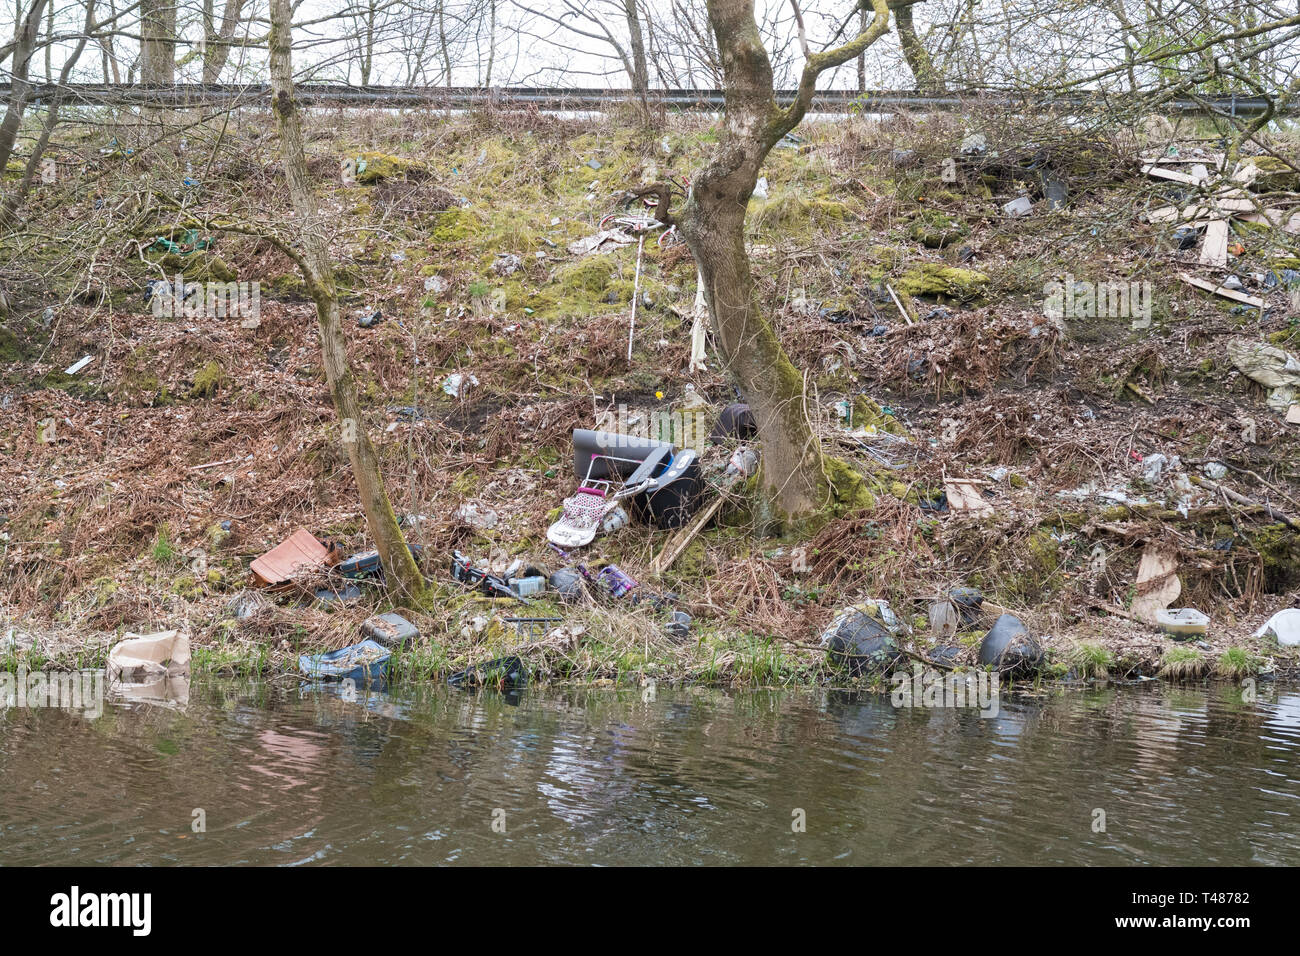 Les décharges sauvages Ecosse - déchets jetés depuis la route sur la rive de la Forth and Clyde Canal près de Kirkintilloch, Ecosse, Royaume-Uni Banque D'Images